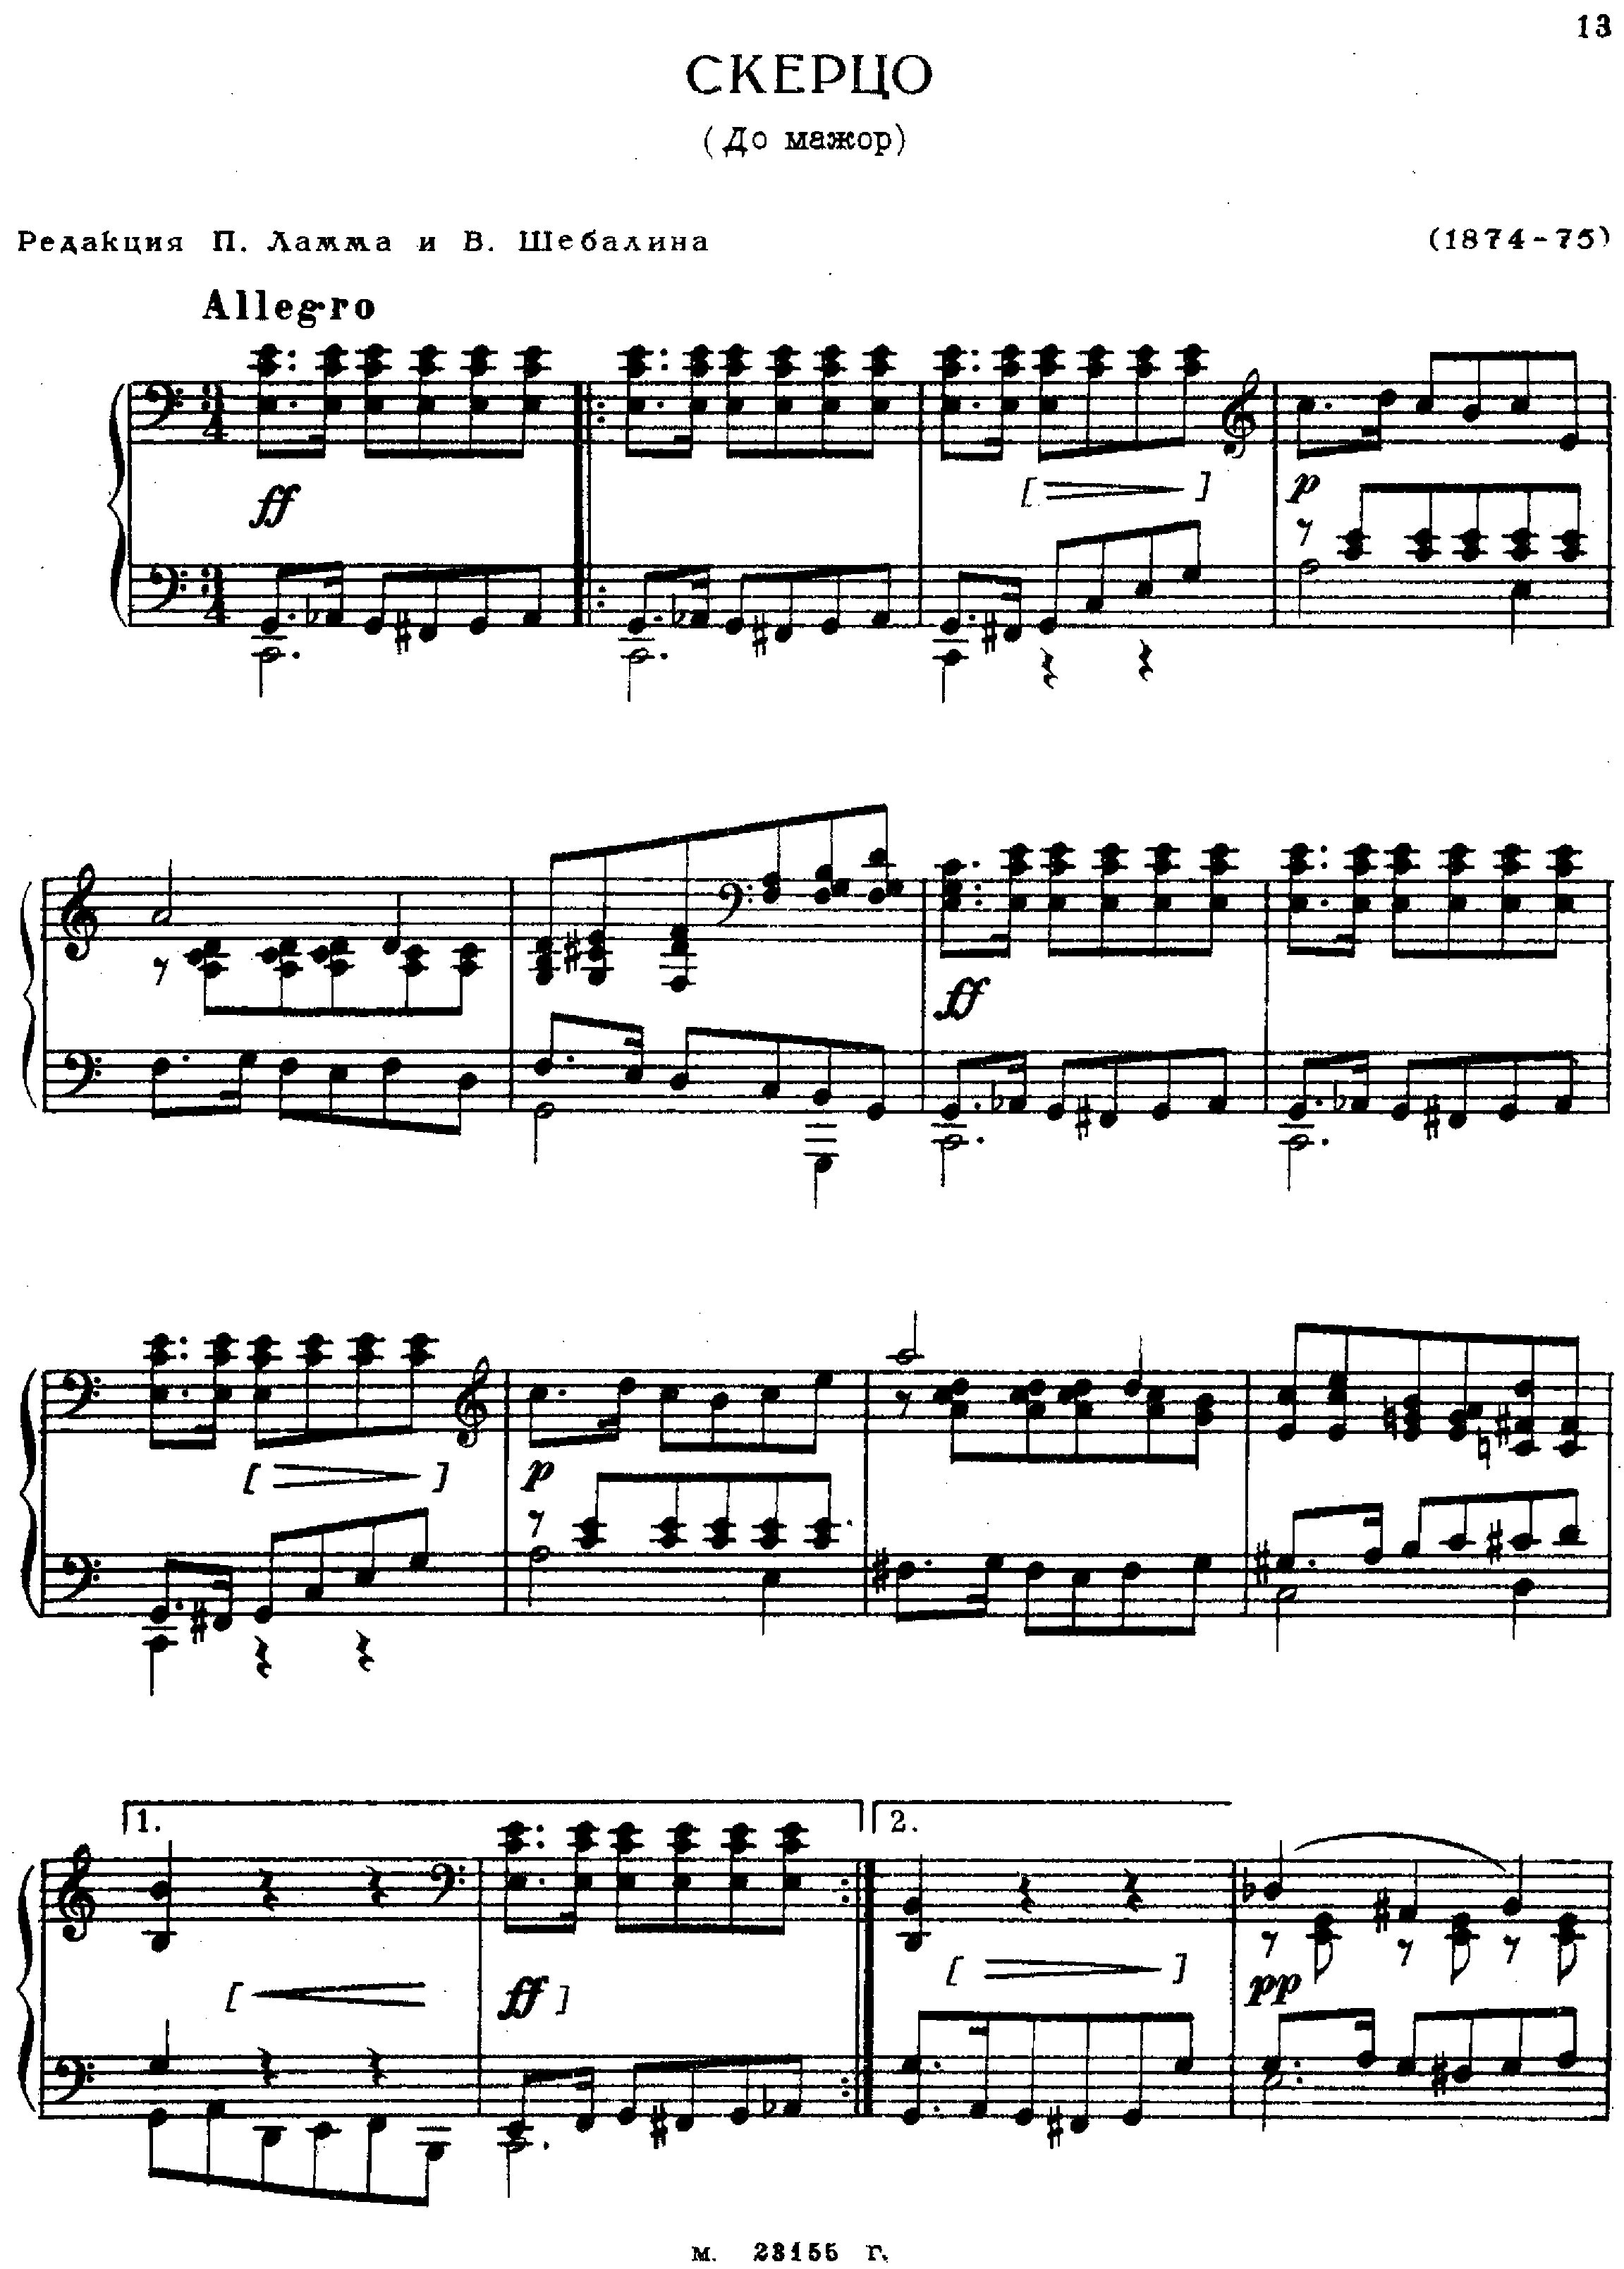 No.2 in C Major琴谱